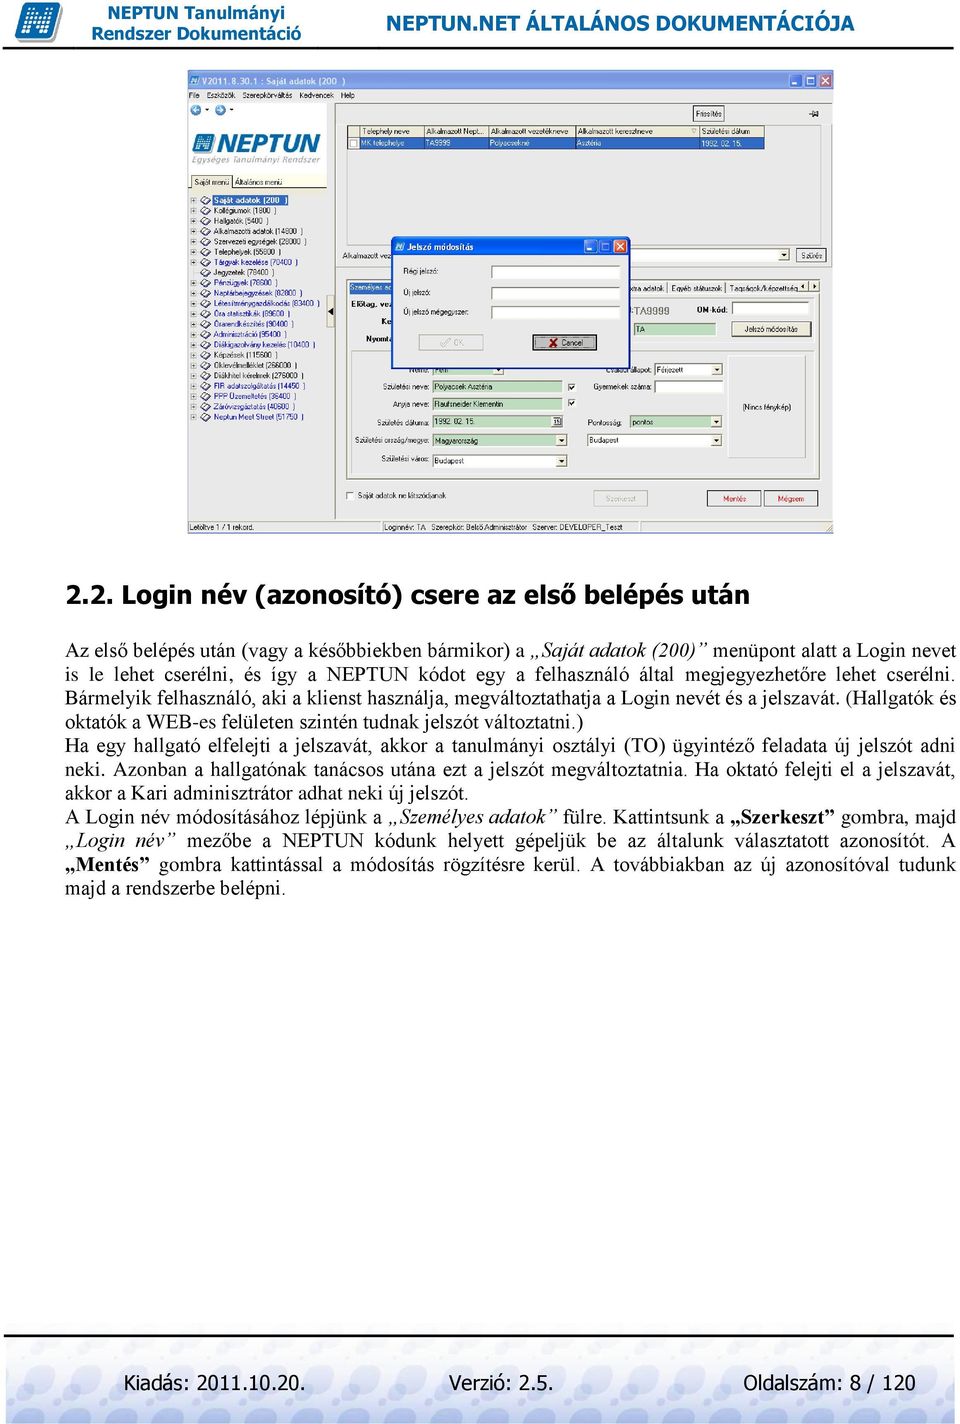 NEPTUN.NET ÁLTALÁNOS DOKUMENTÁCIÓJA - PDF Free Download